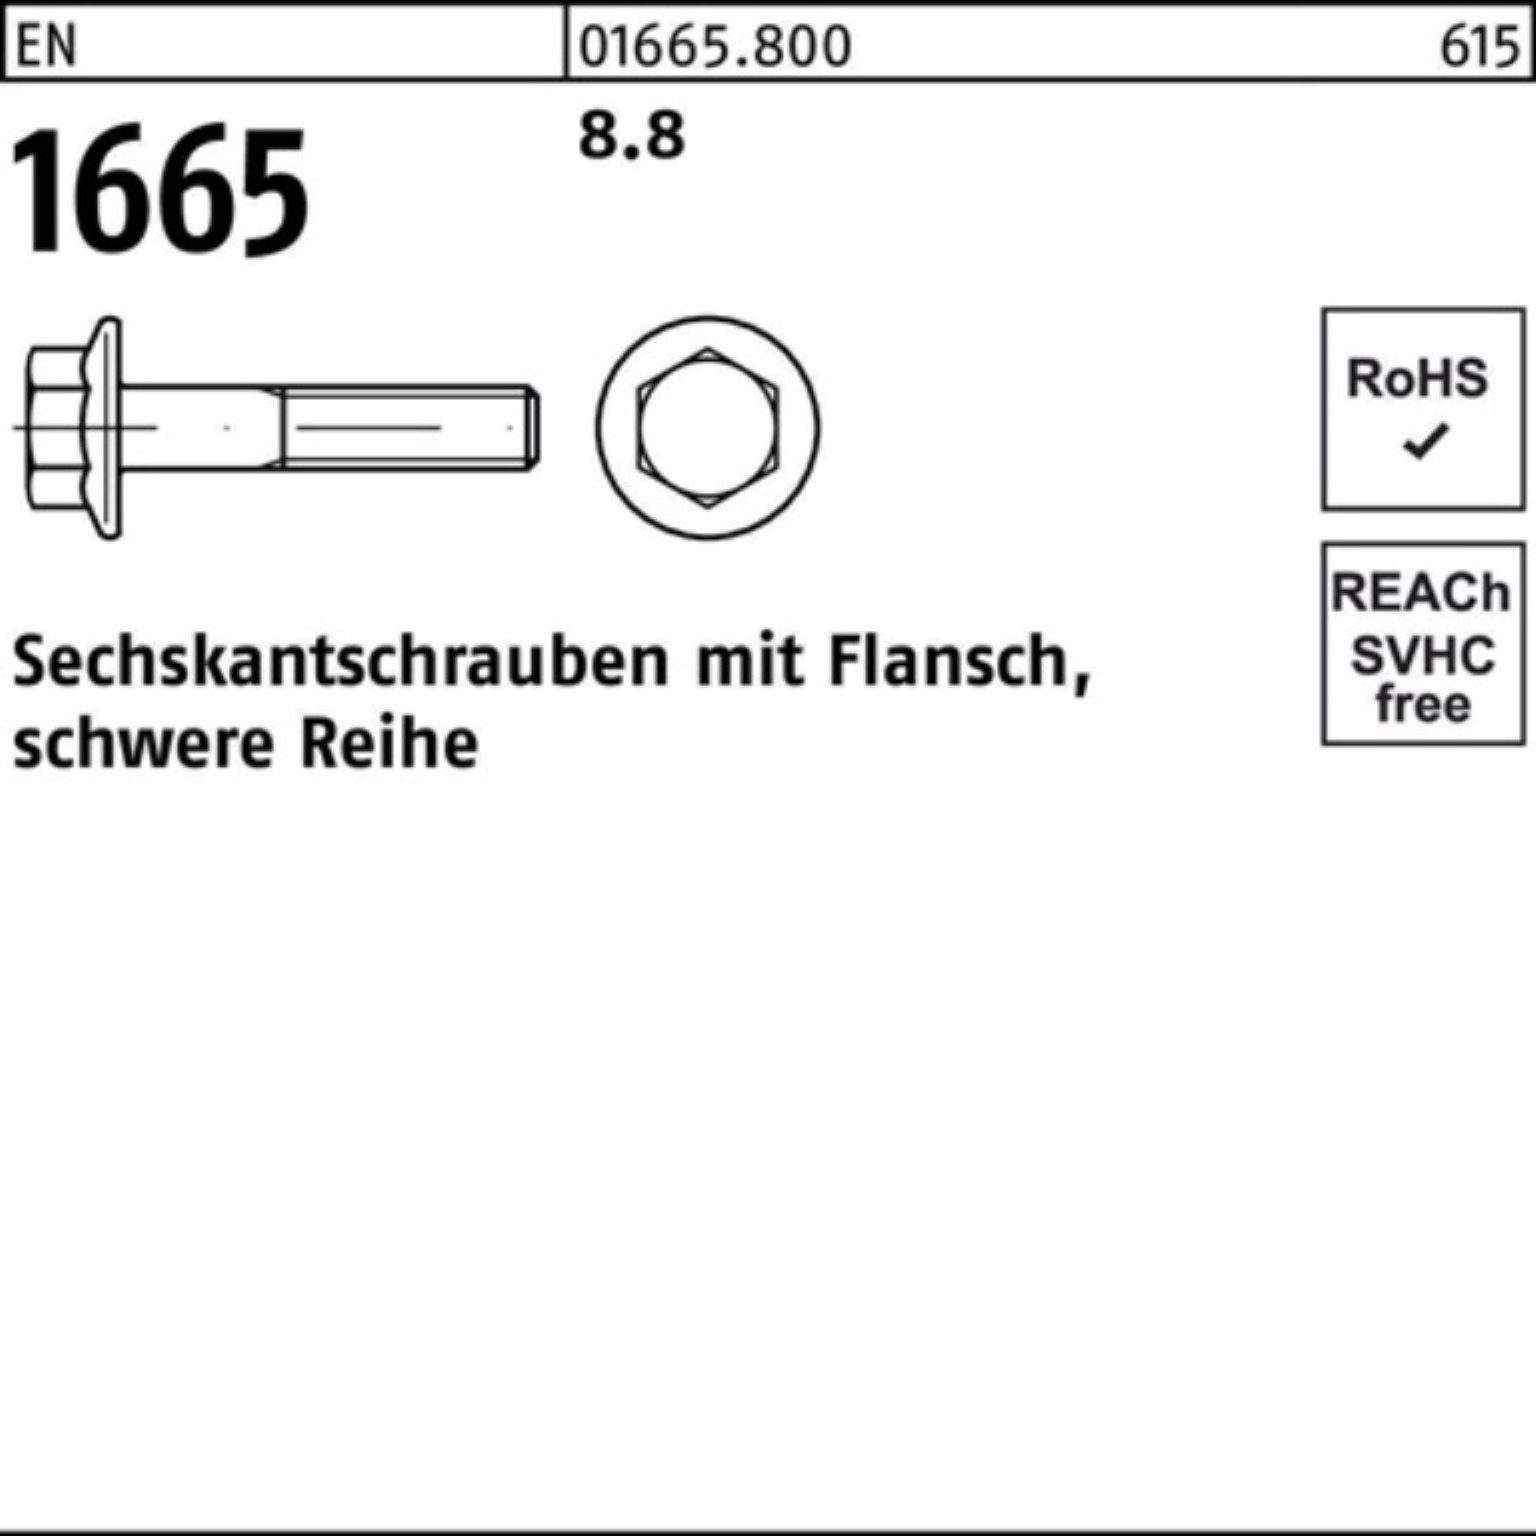 Reyher Sechskantschraube 1665 M16x 45 EN 8.8 EN Sechskantschraube Flansch 100er Stück 50 Pack